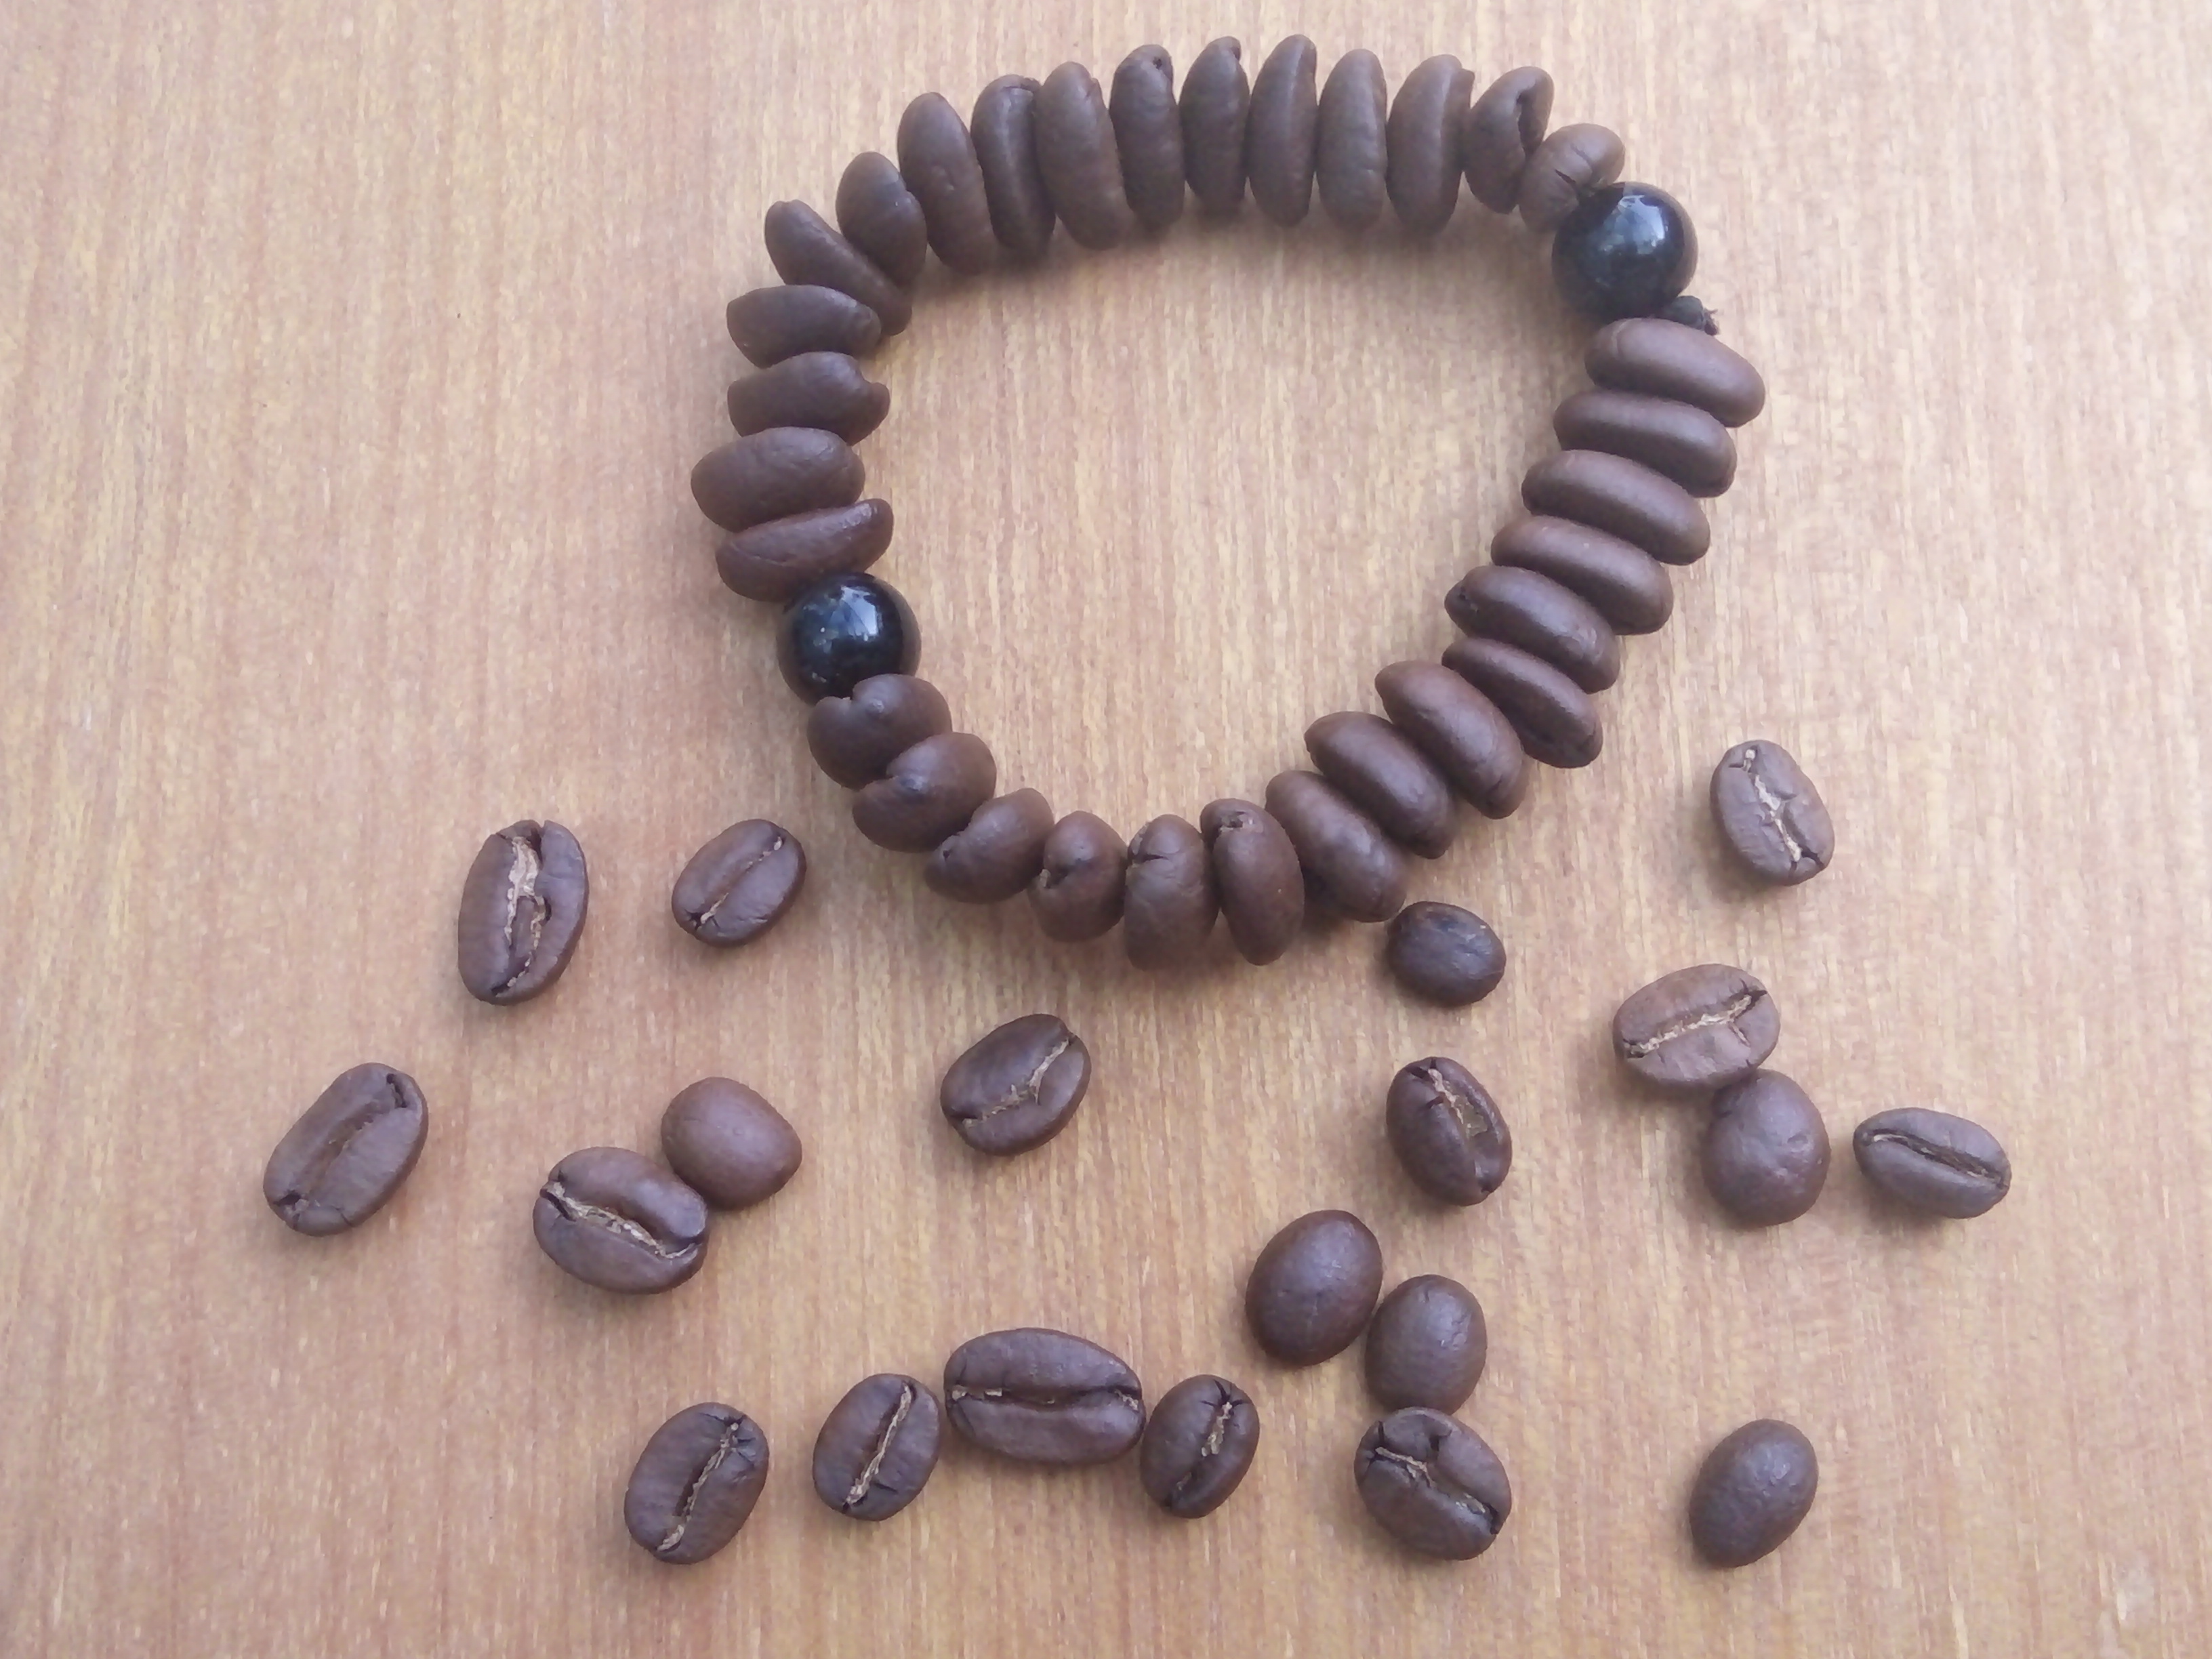 Rangkaian kopi inspirasi untuk NKRI. foto:widikamidi